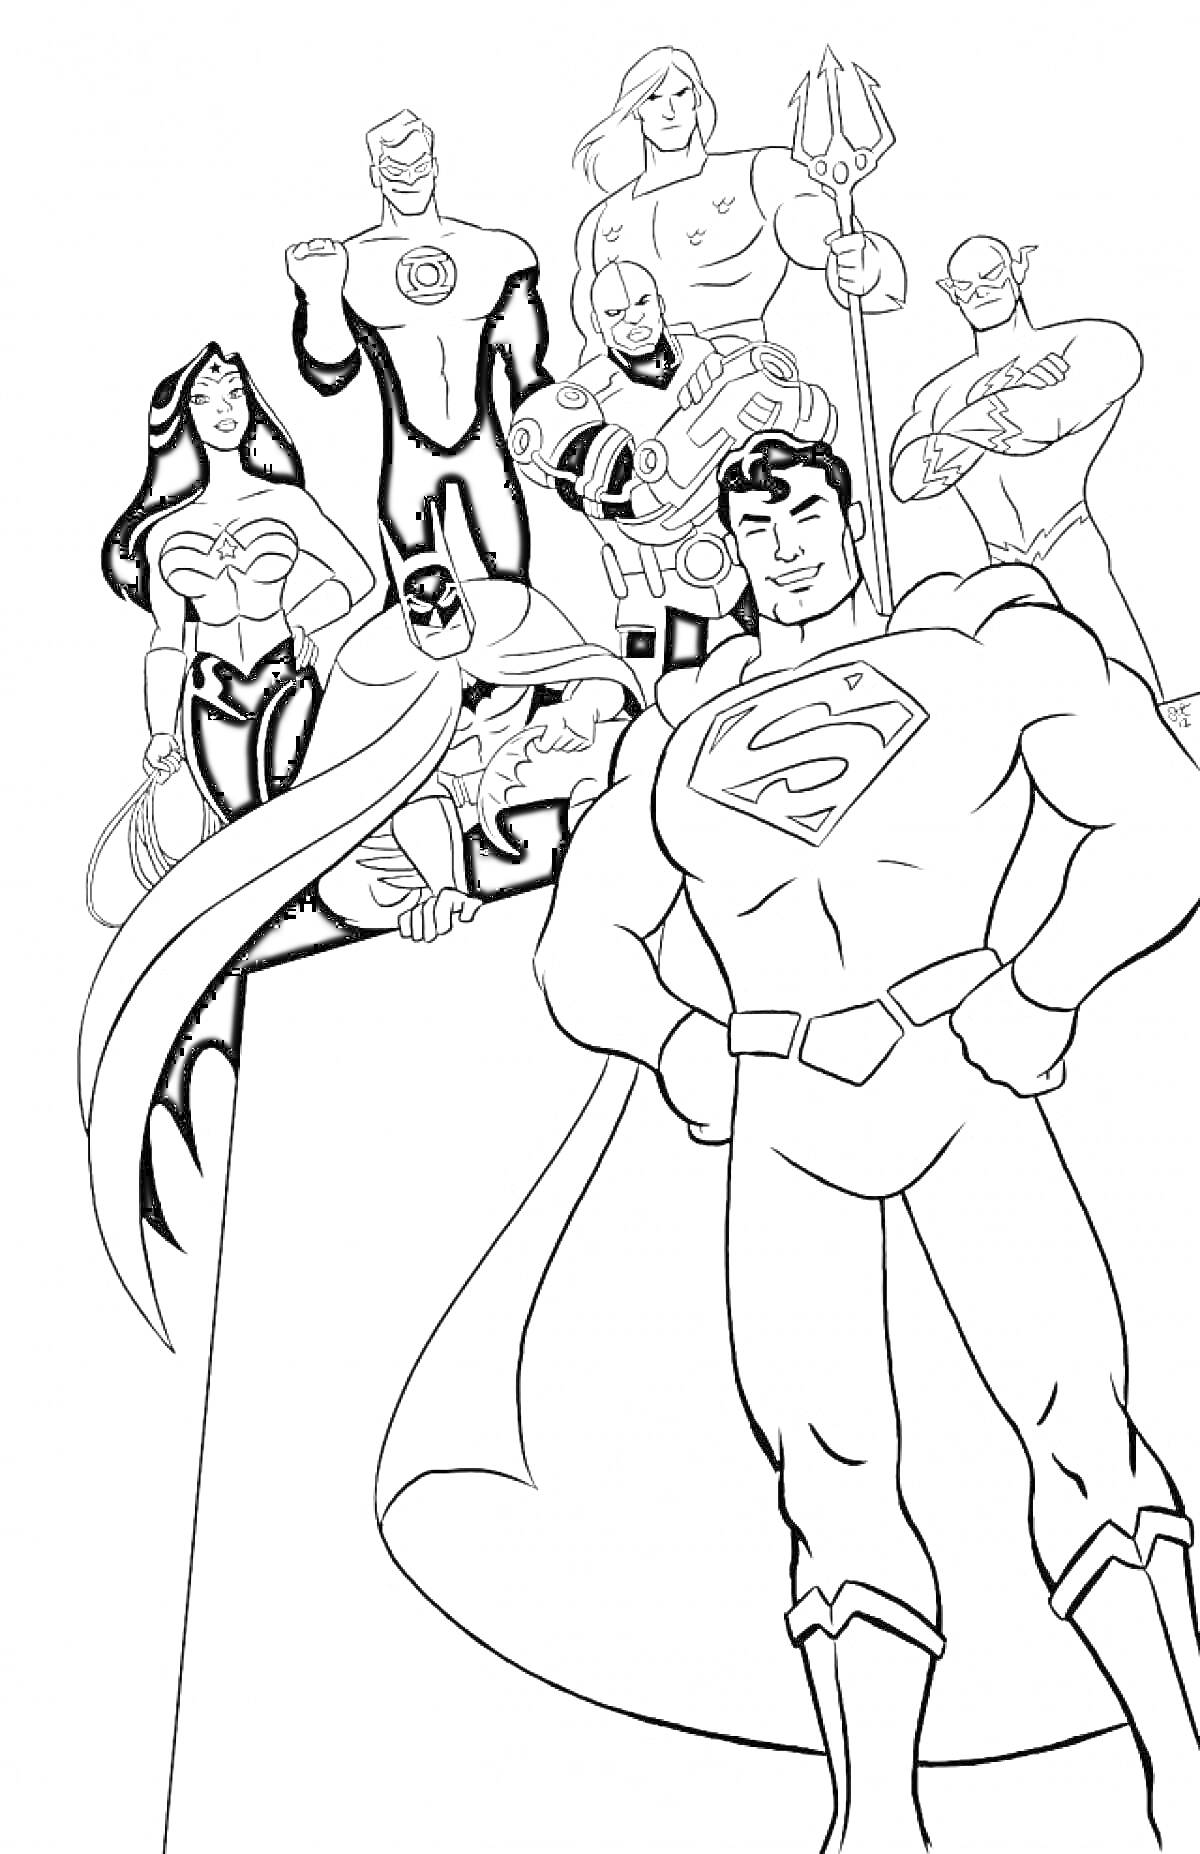 Герои Лиги Справедливости в полный рост, 7 персонажей, включая супергероев с плащами, женщину с лентой, мужчину с трезубцем.